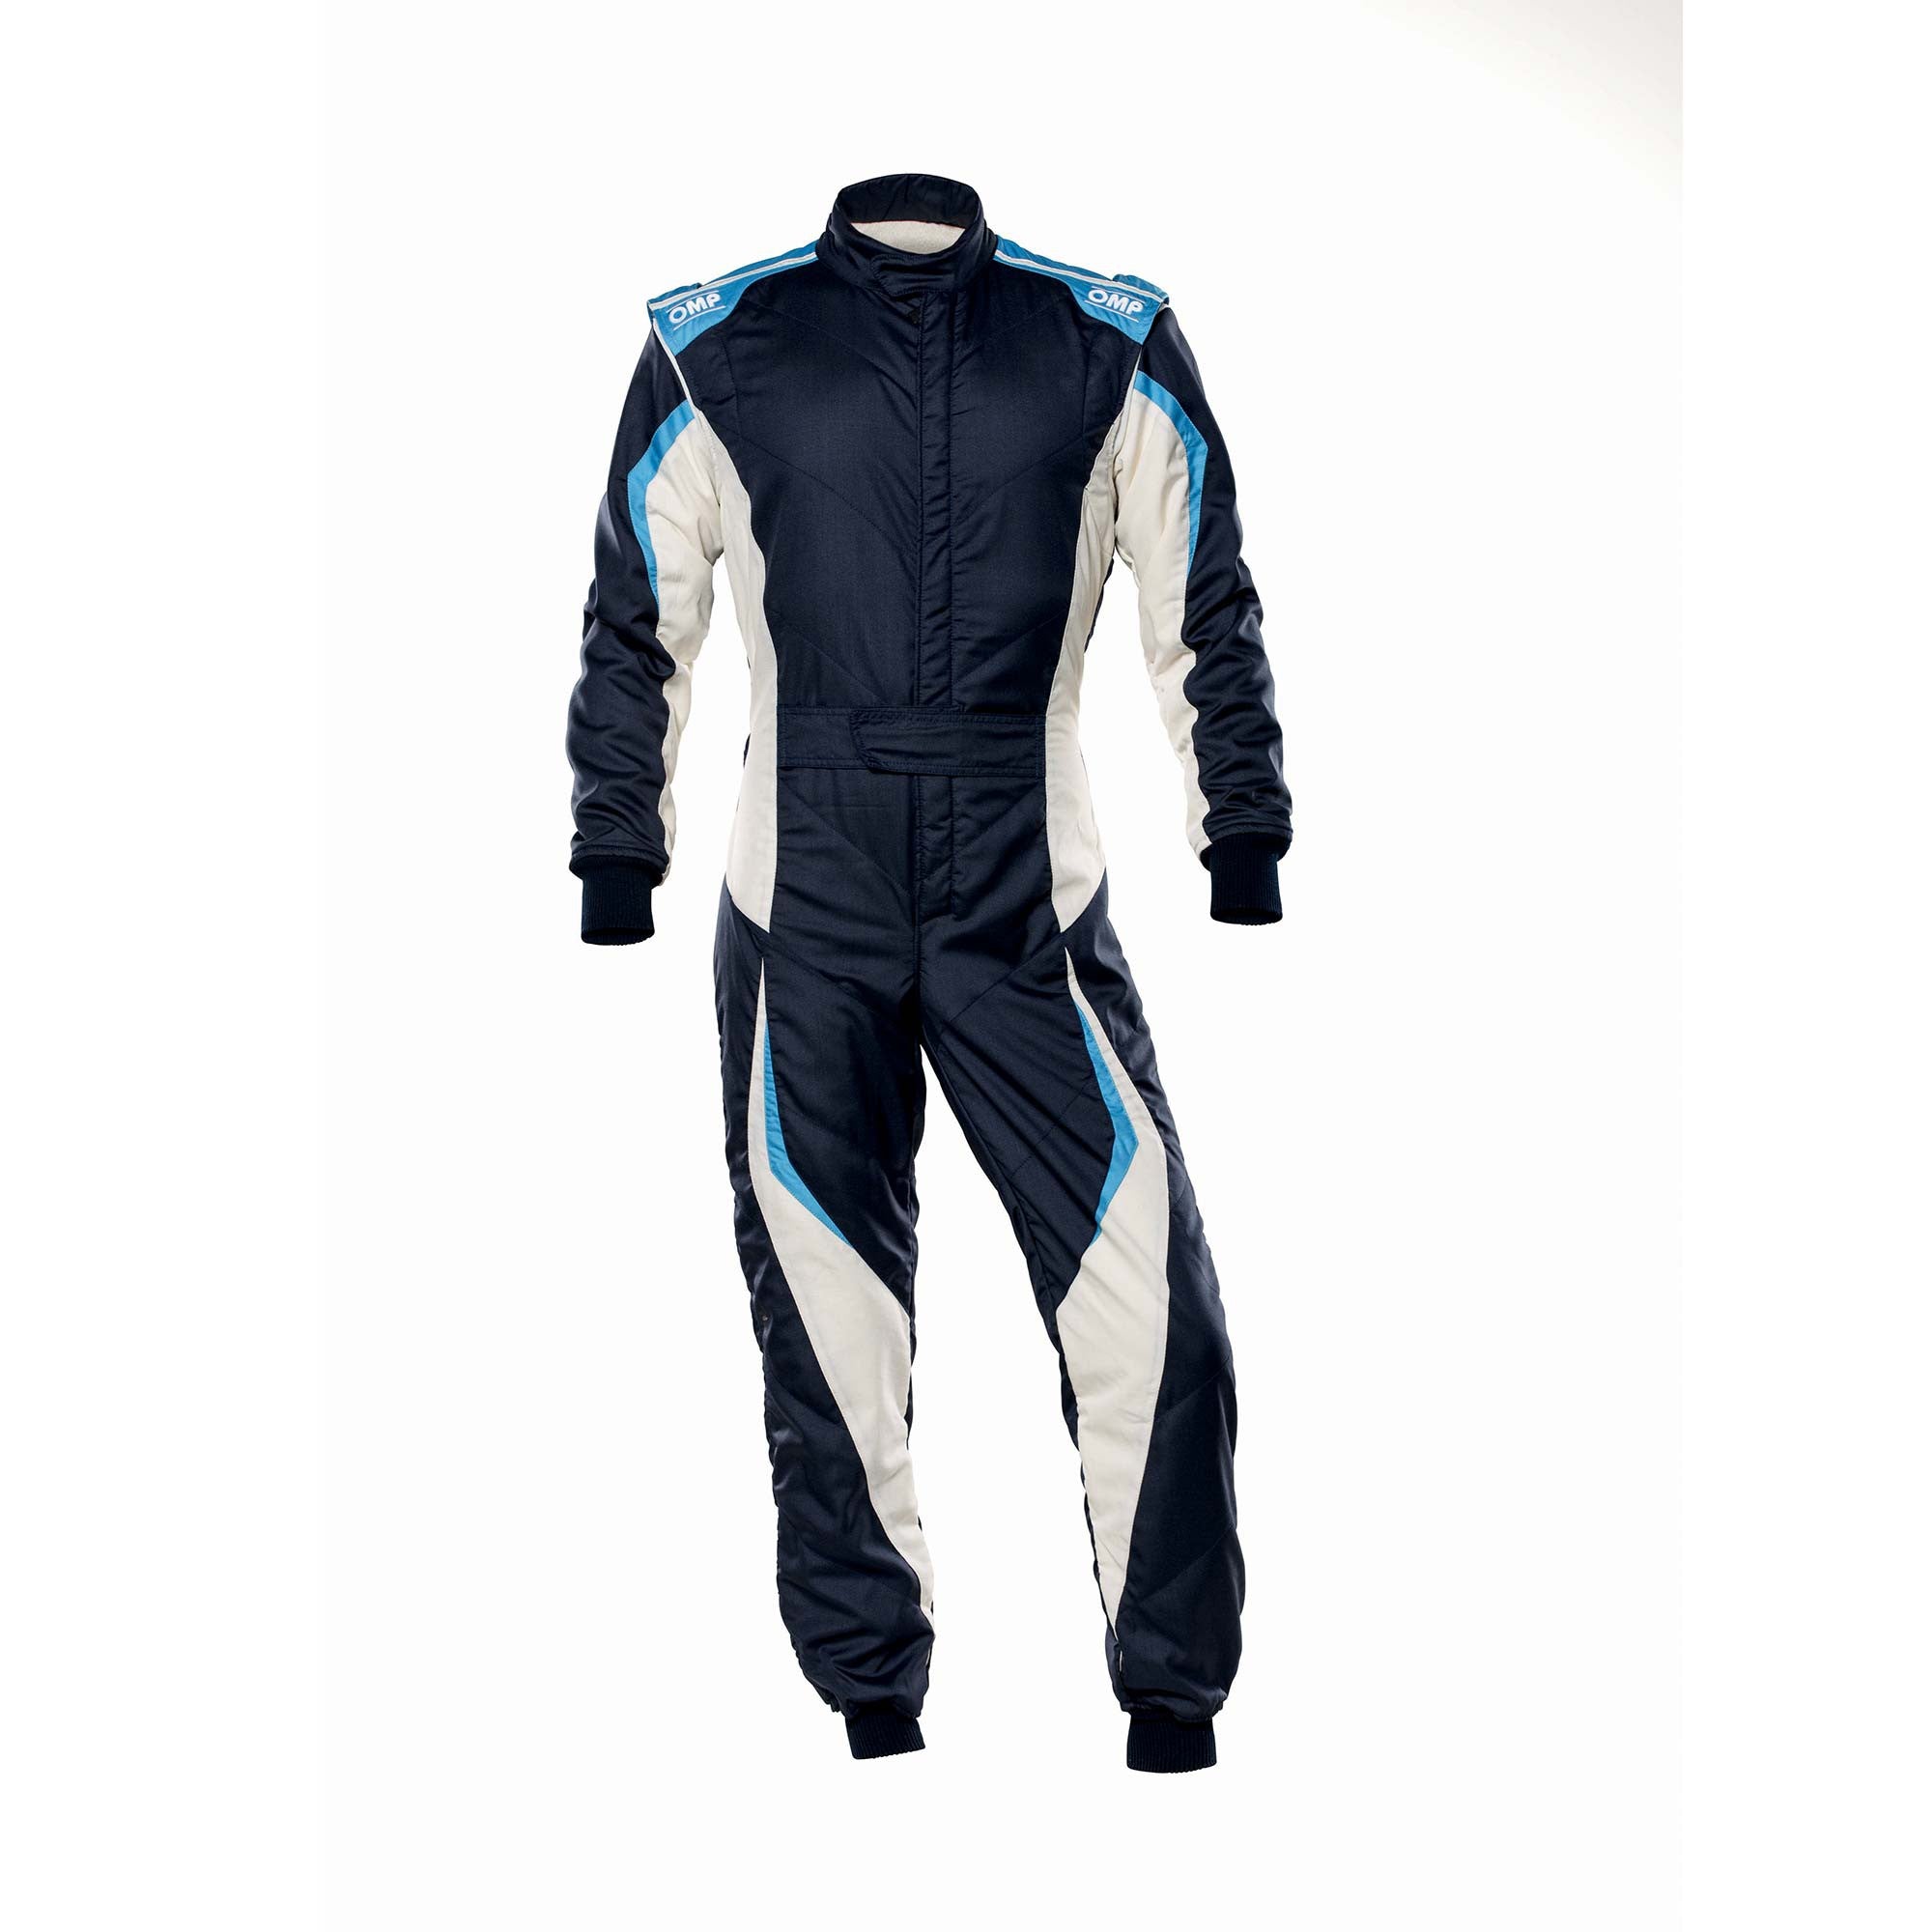 OMP IA0-1859-B01-246-64 Racing suit TECNICA EVO MY2021, FIA 8856-2018, navy blue/white/grey/cyan, size 64 Photo-0 